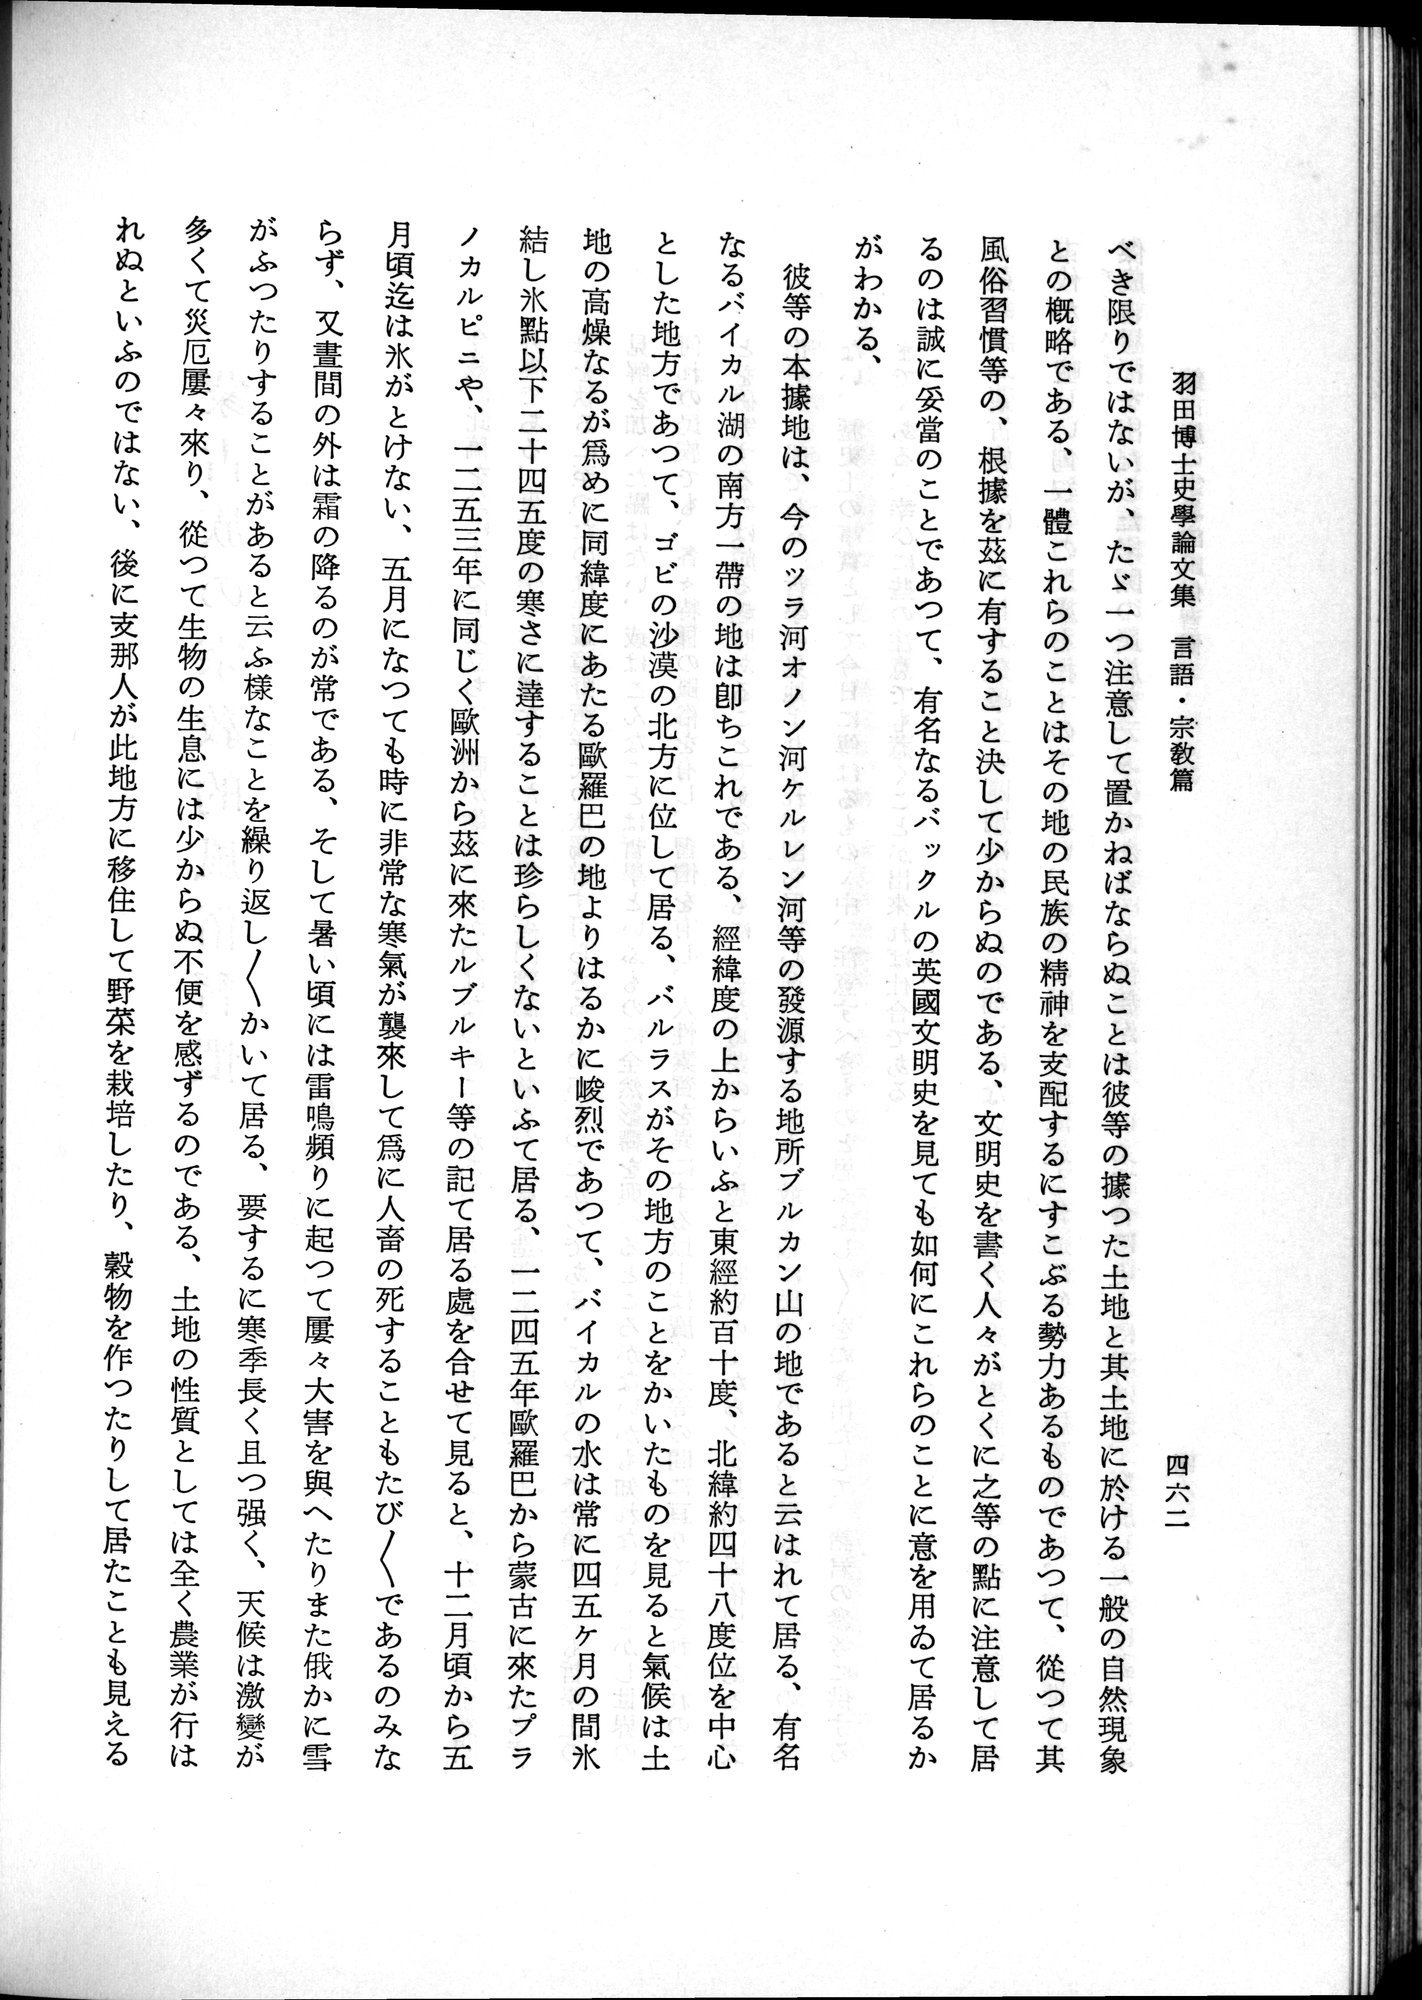 羽田博士史学論文集 : vol.2 / 524 ページ（白黒高解像度画像）